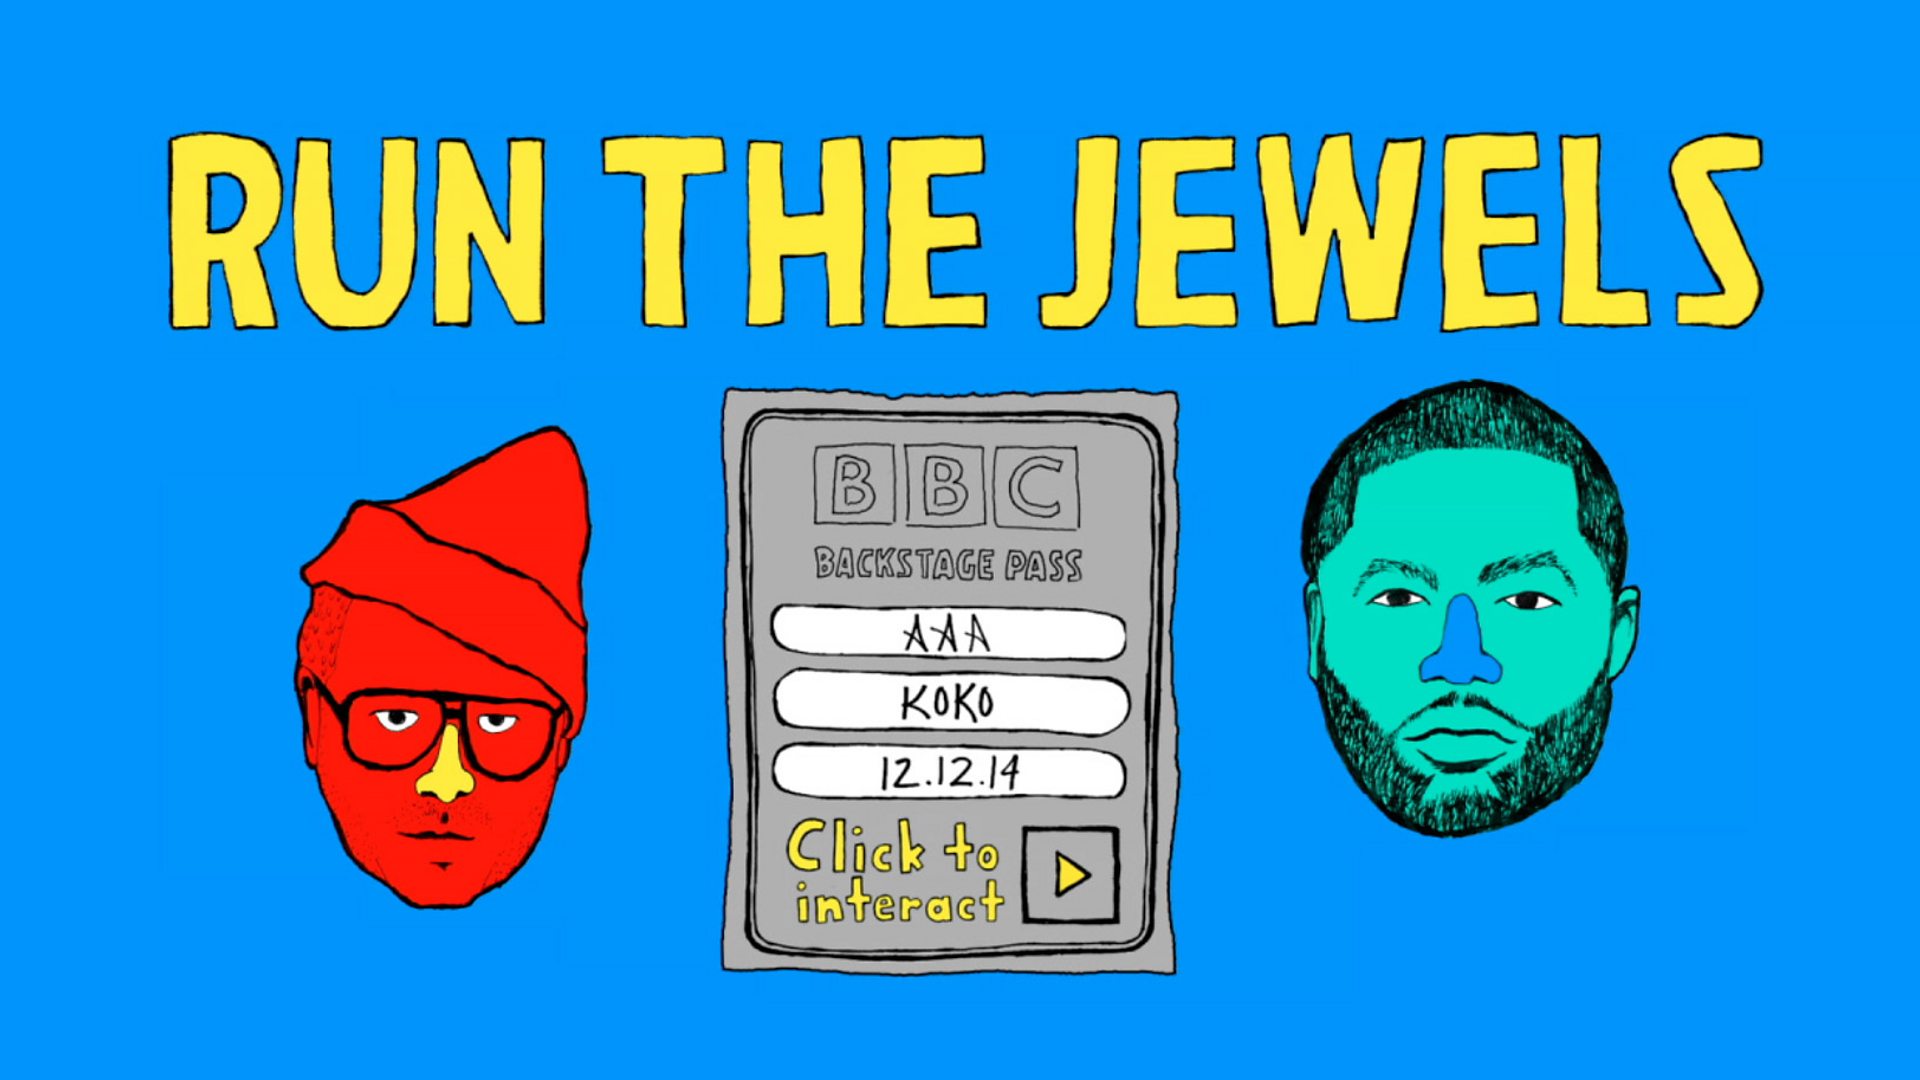 Run the Jewels. Run the Jewels 3. Run the Jewels 4. Run the Jewels logo. Run the content